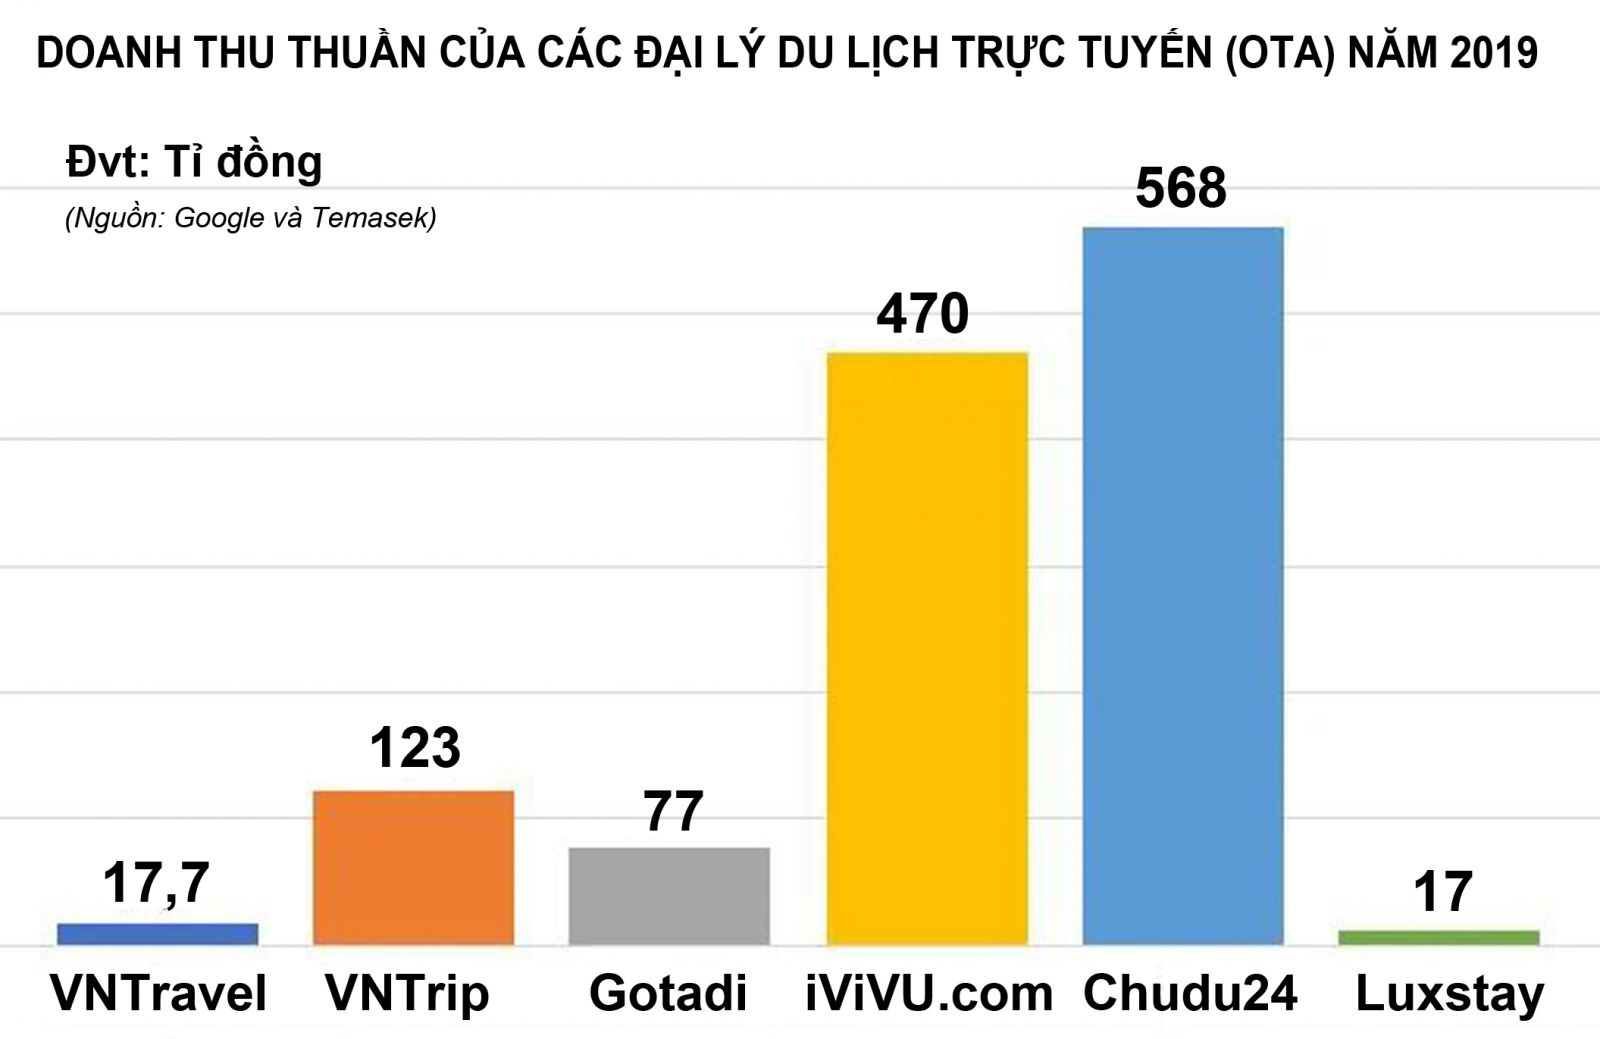 Theo báo cáo của Google và Temasek quy mô du lịch trực tuyến Việt Nam sẽ đạt tới 9 tỷ USD vào năm 2025.